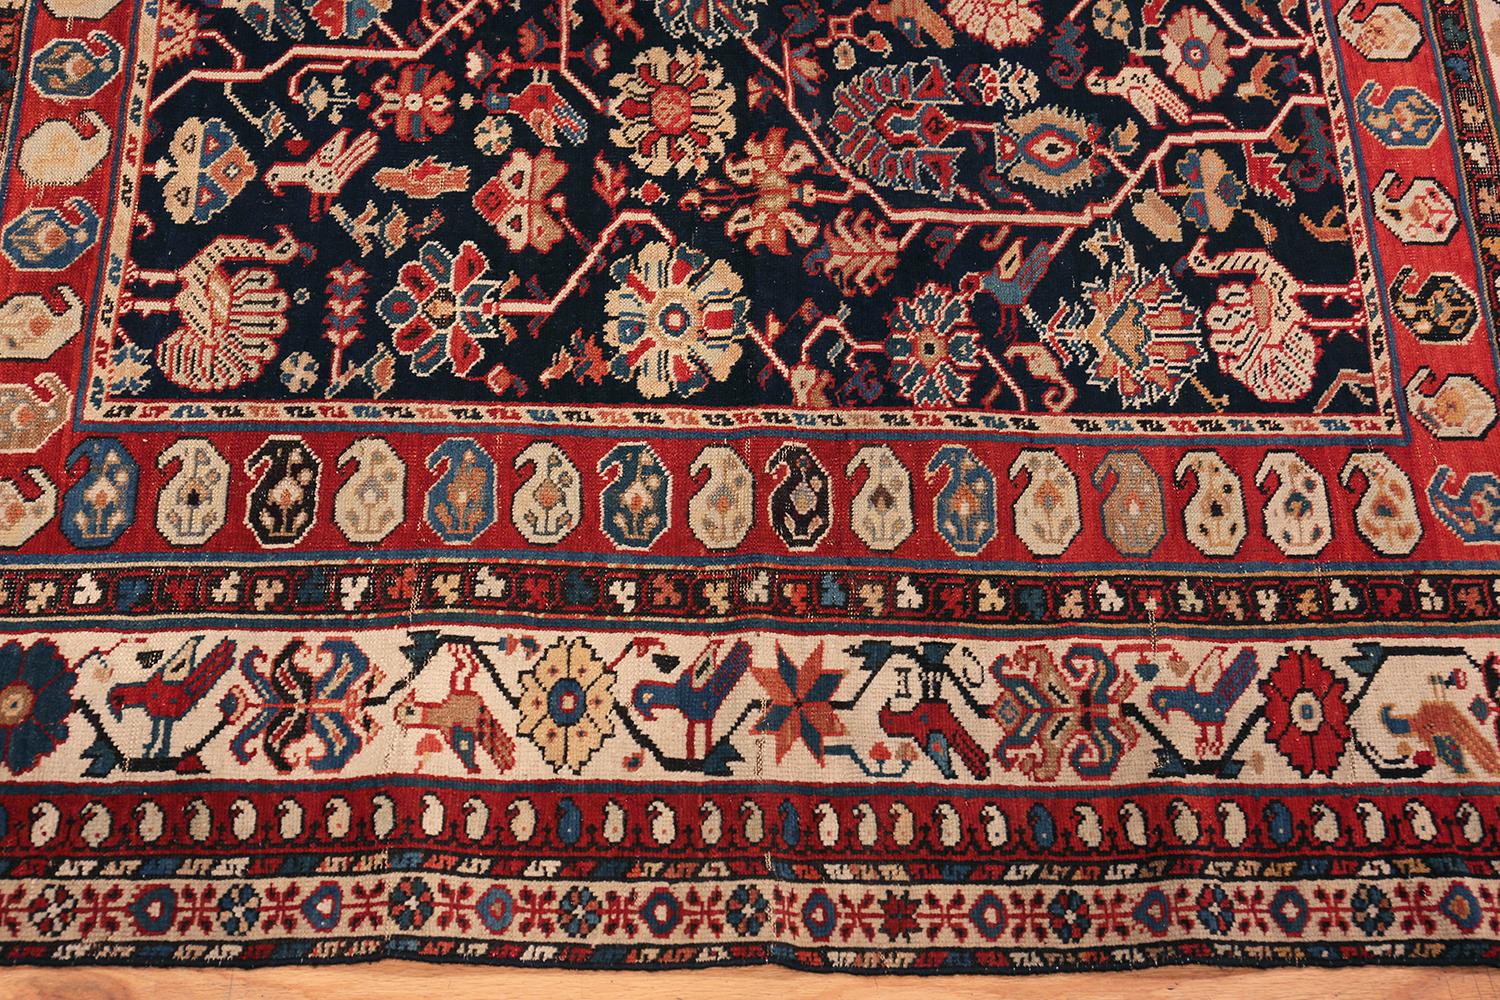 Charming Antique Caucasian Baku Khila Rug, Origin: Caucasus, Circa Date: 1800's - Size: 6 ft 7 in x 7 ft 10 in (2.01 m x 2.39 m).